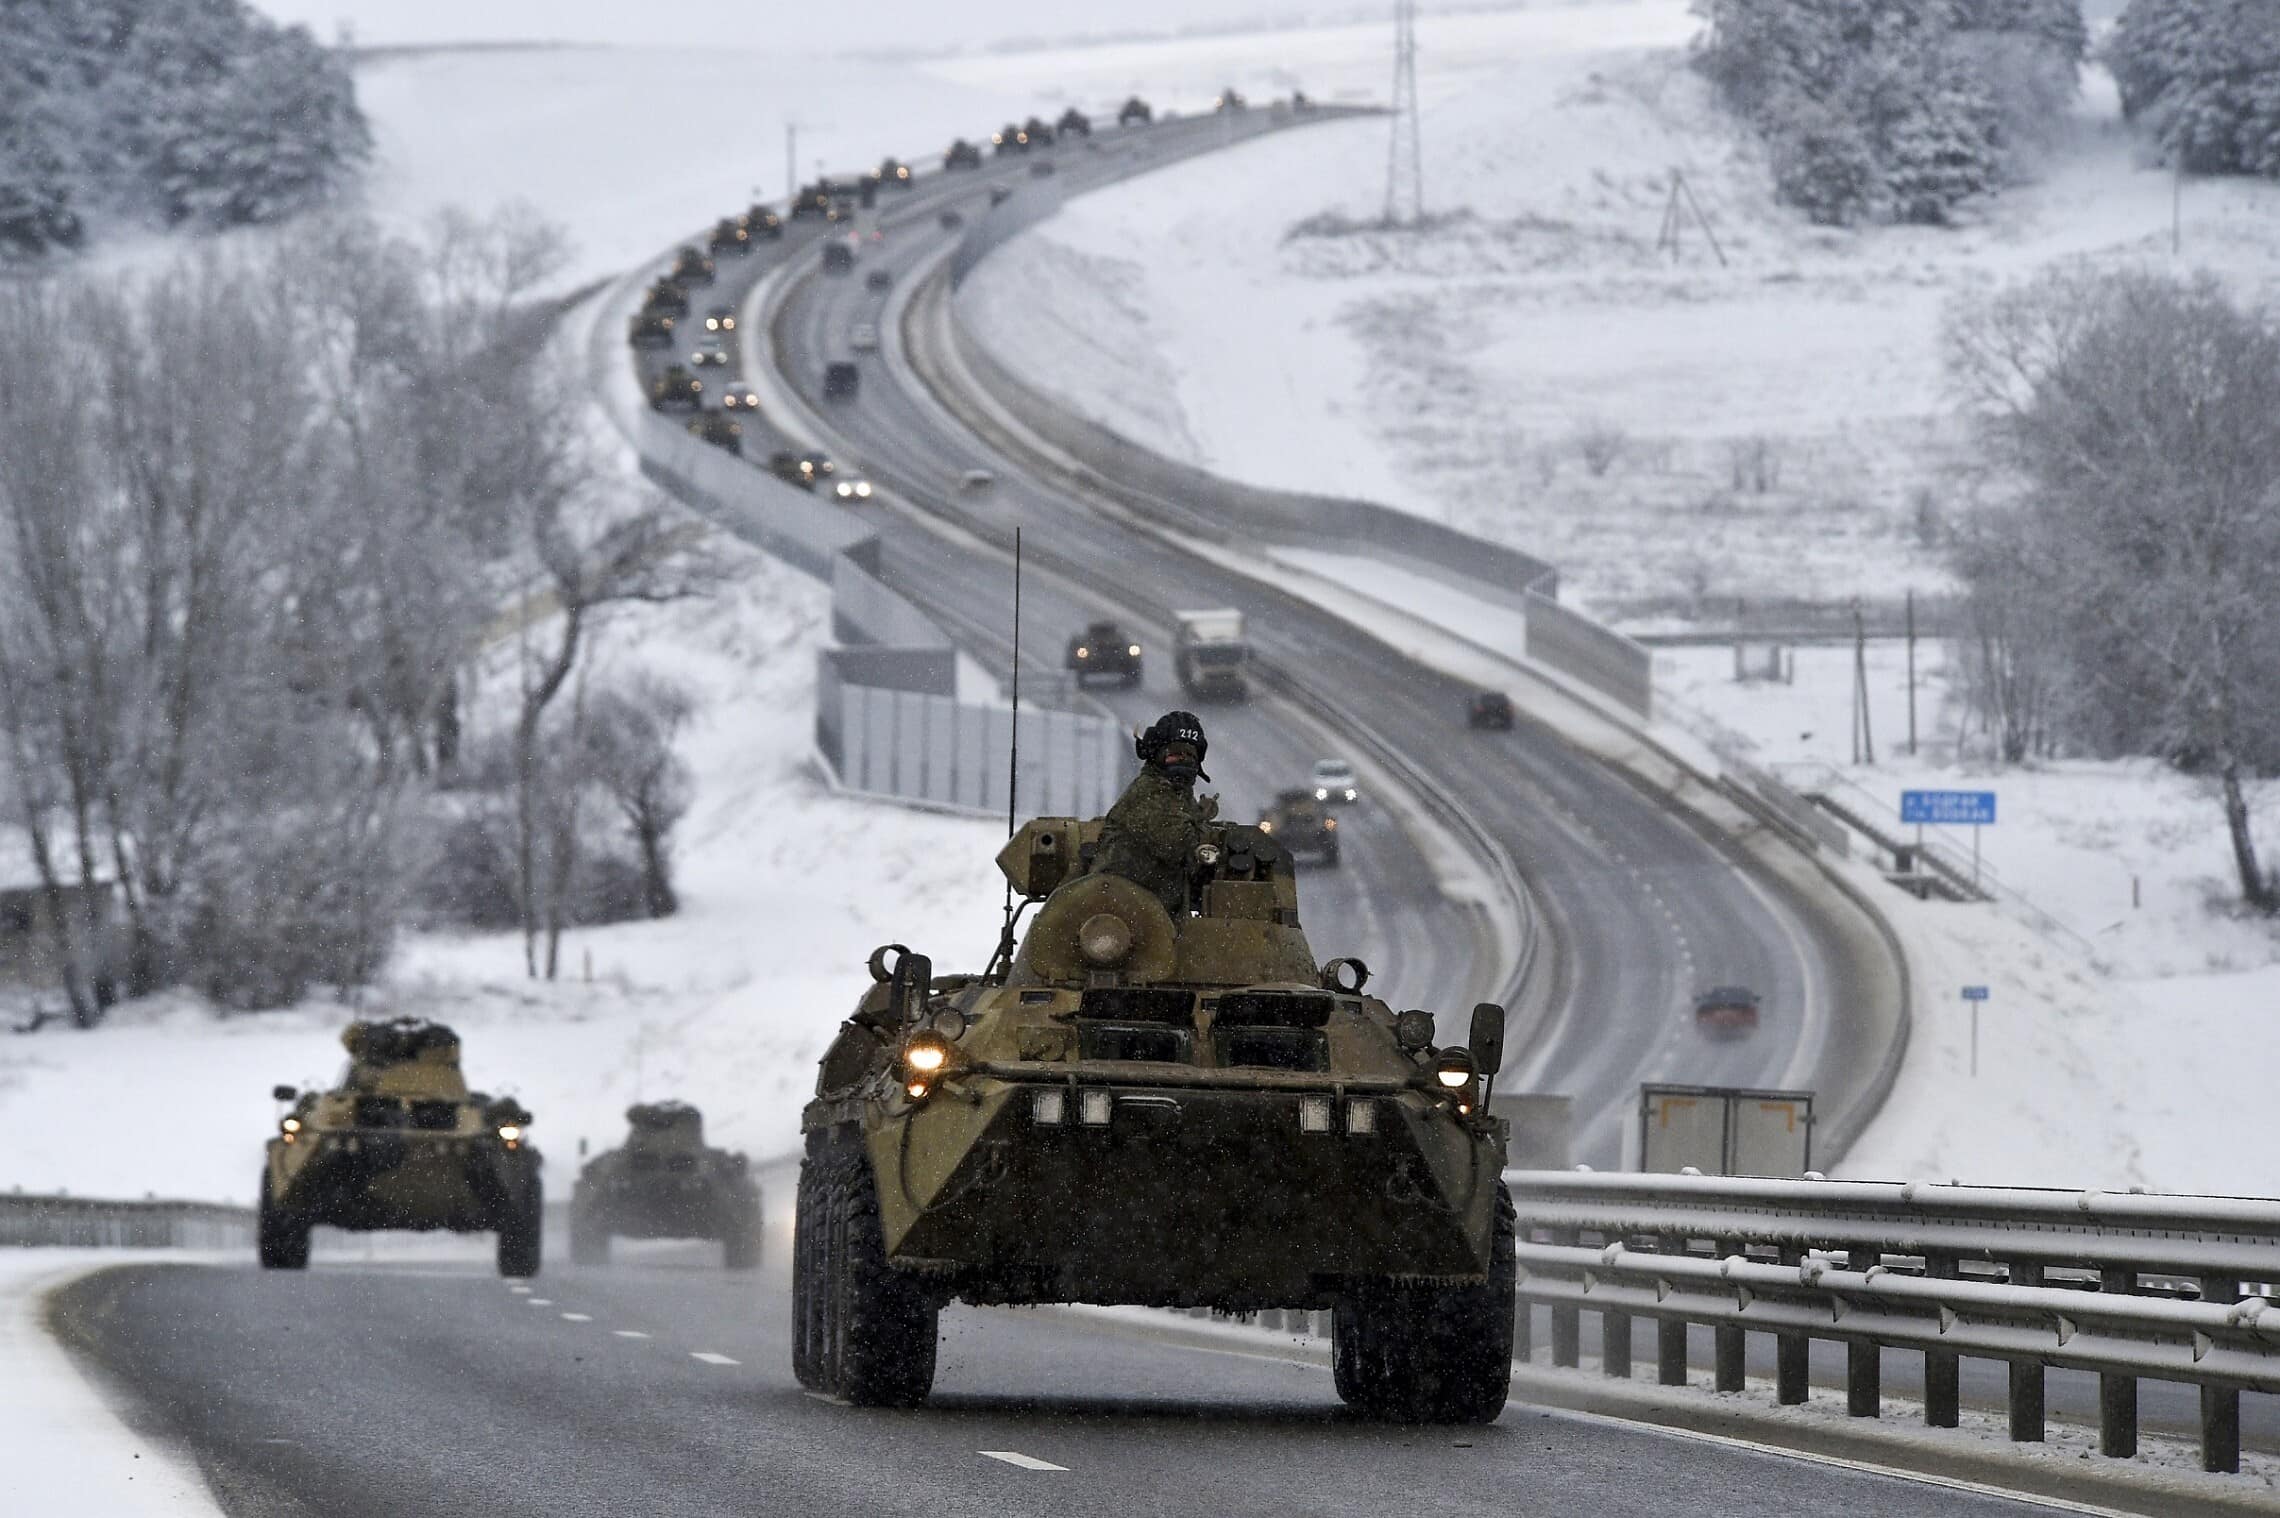 שיירת משוריינים רוסית בדרך לגבול אוקראינה, 18 בינואר 2022 (צילום: AP Photo)